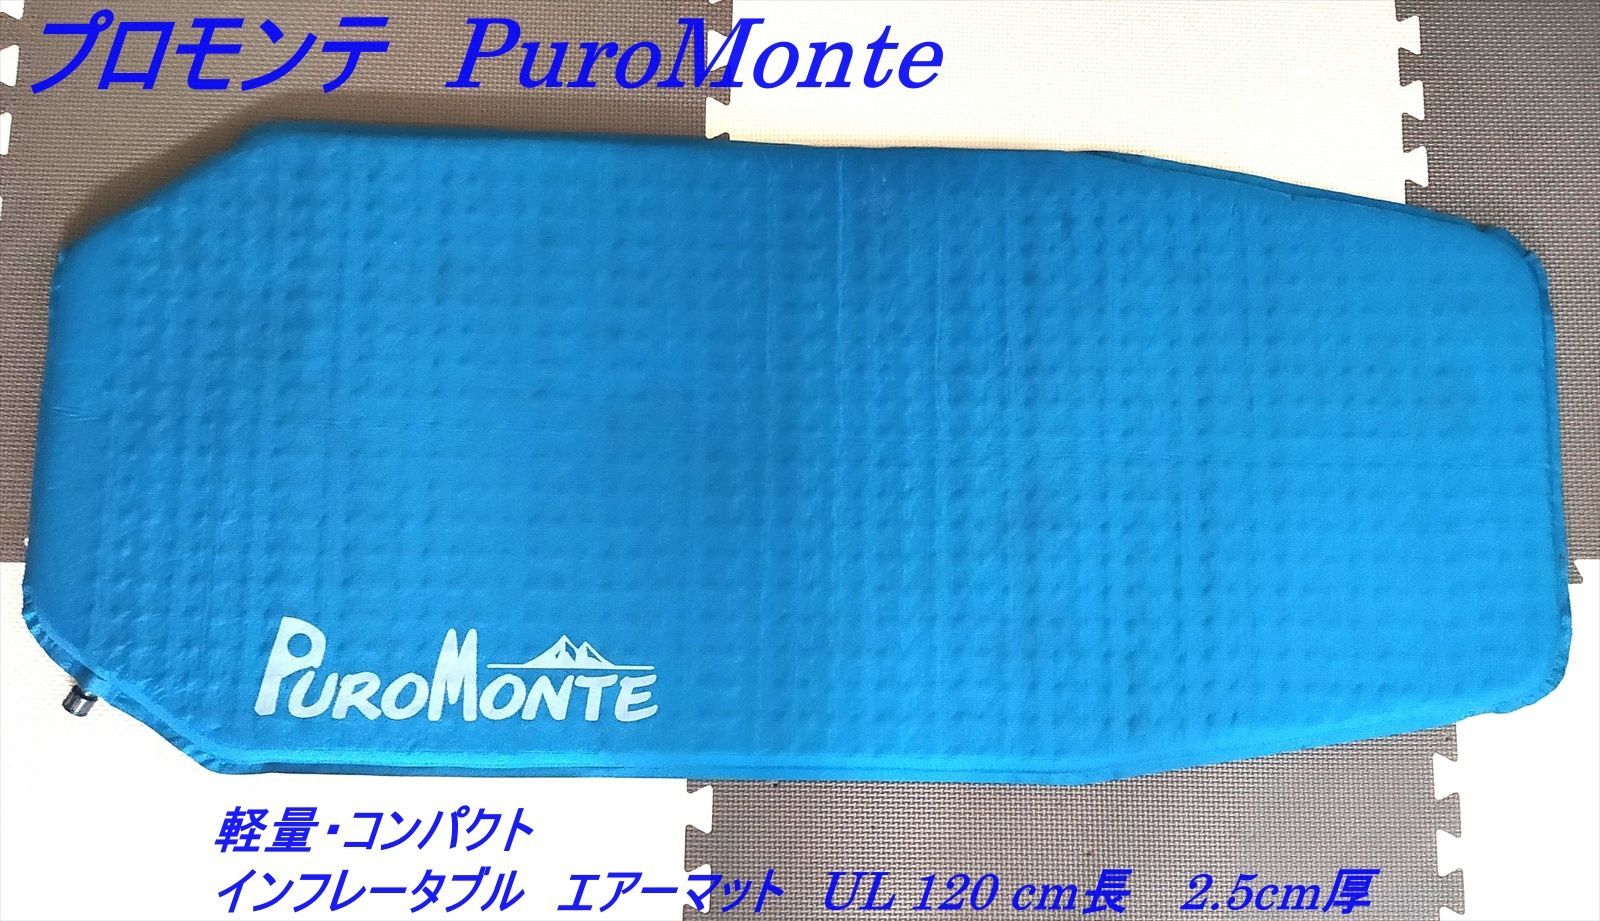 PUROMONTE エアマット120 プロモンテ マット - 寝袋/寝具